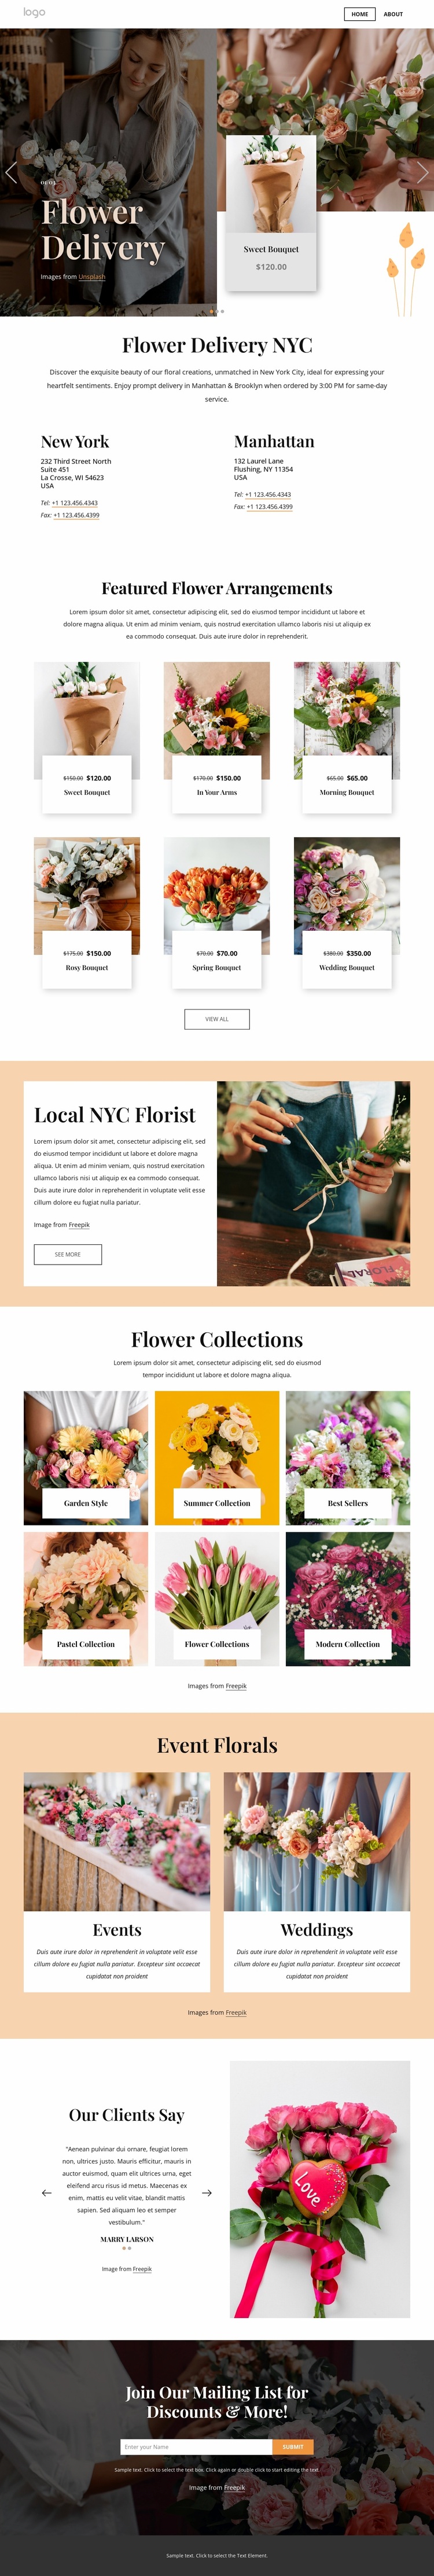 Flower delivery NYC Website Design